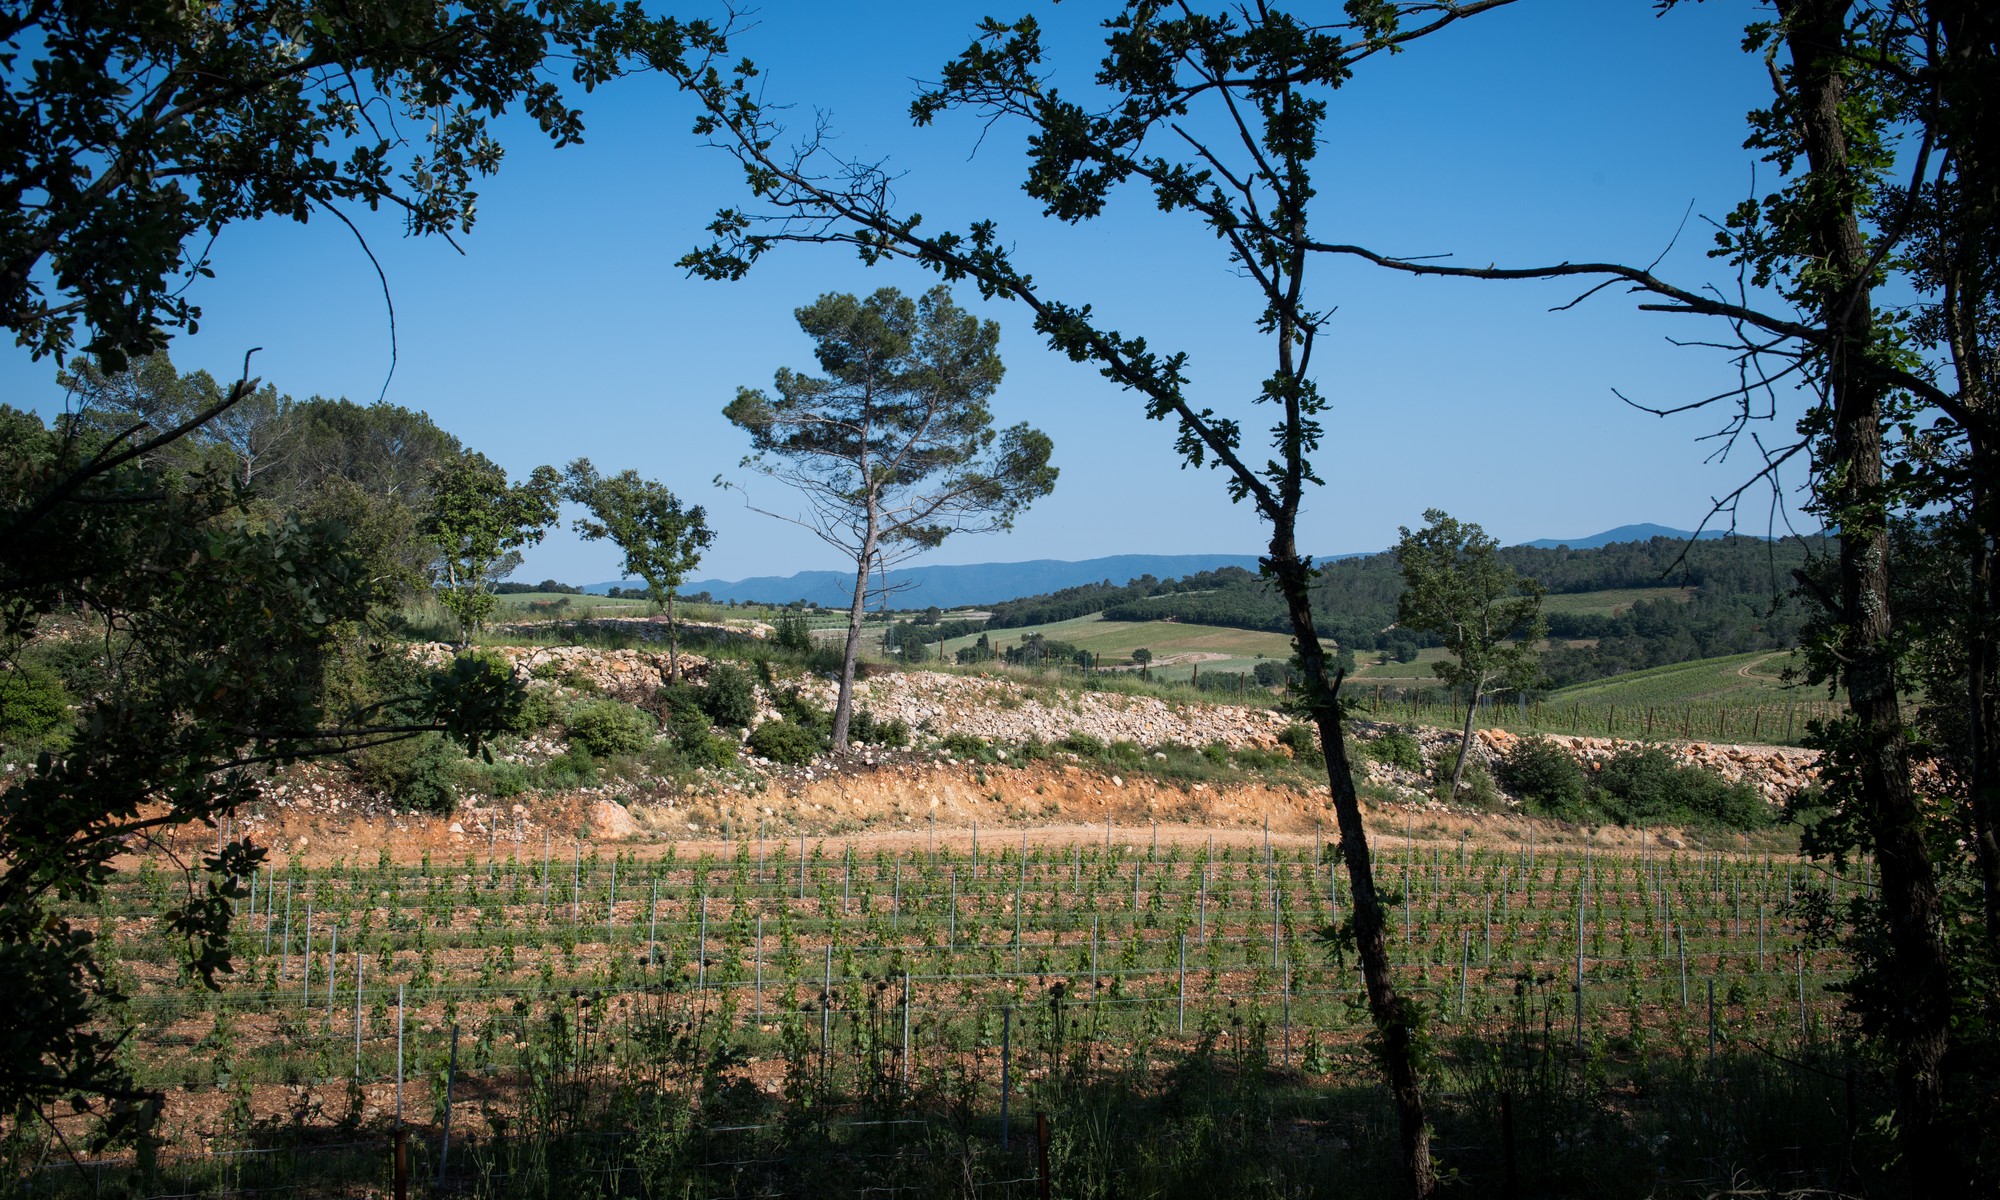 Vue sur les vignes du domaine de La Bernarde, un vignoble provençal produisant des vins rosé, blanc et rouge en agriculture bio